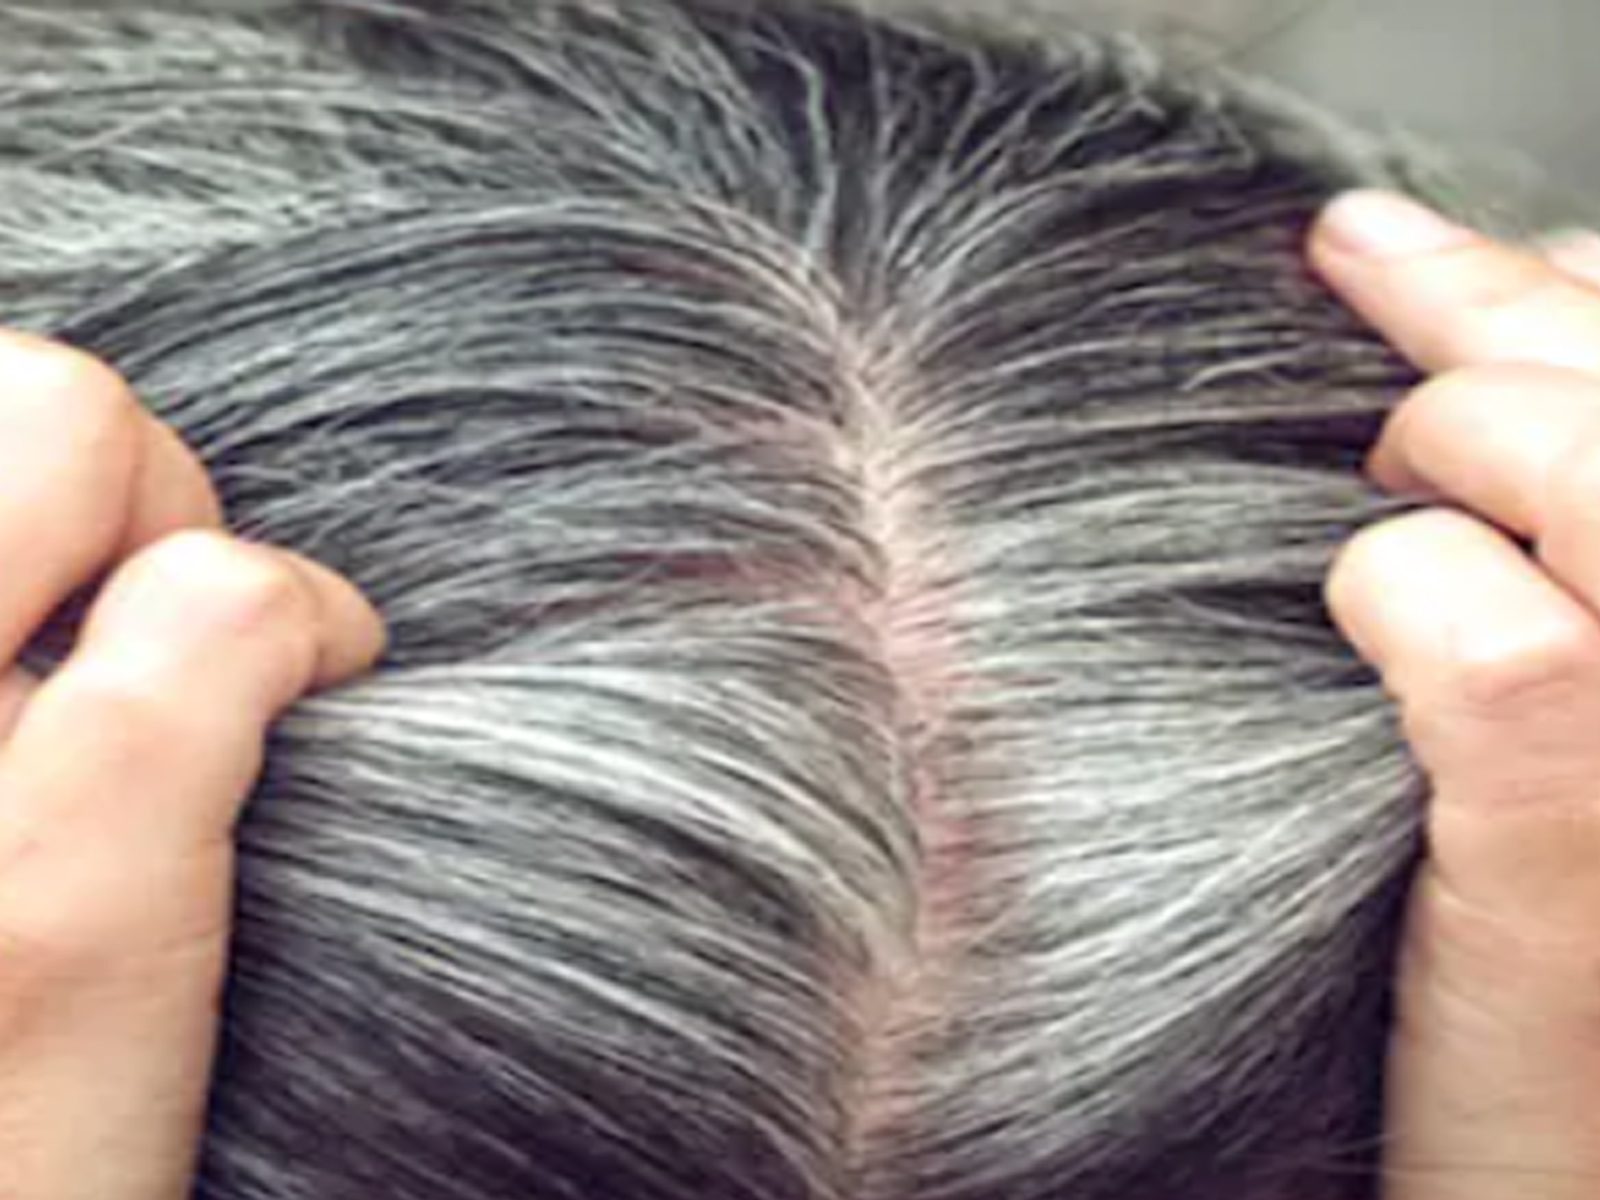 Hair Tips: ਵਾਲ ਛੋਟੀ ਉਮਰ ਵਿੱਚ ਸਫੇਦ ਹੋ ਰਹੇ ਹਨ? ਮਾਹਿਰਾਂ ਤੋਂ ਜਾਣੋ ਕਾਰਨ